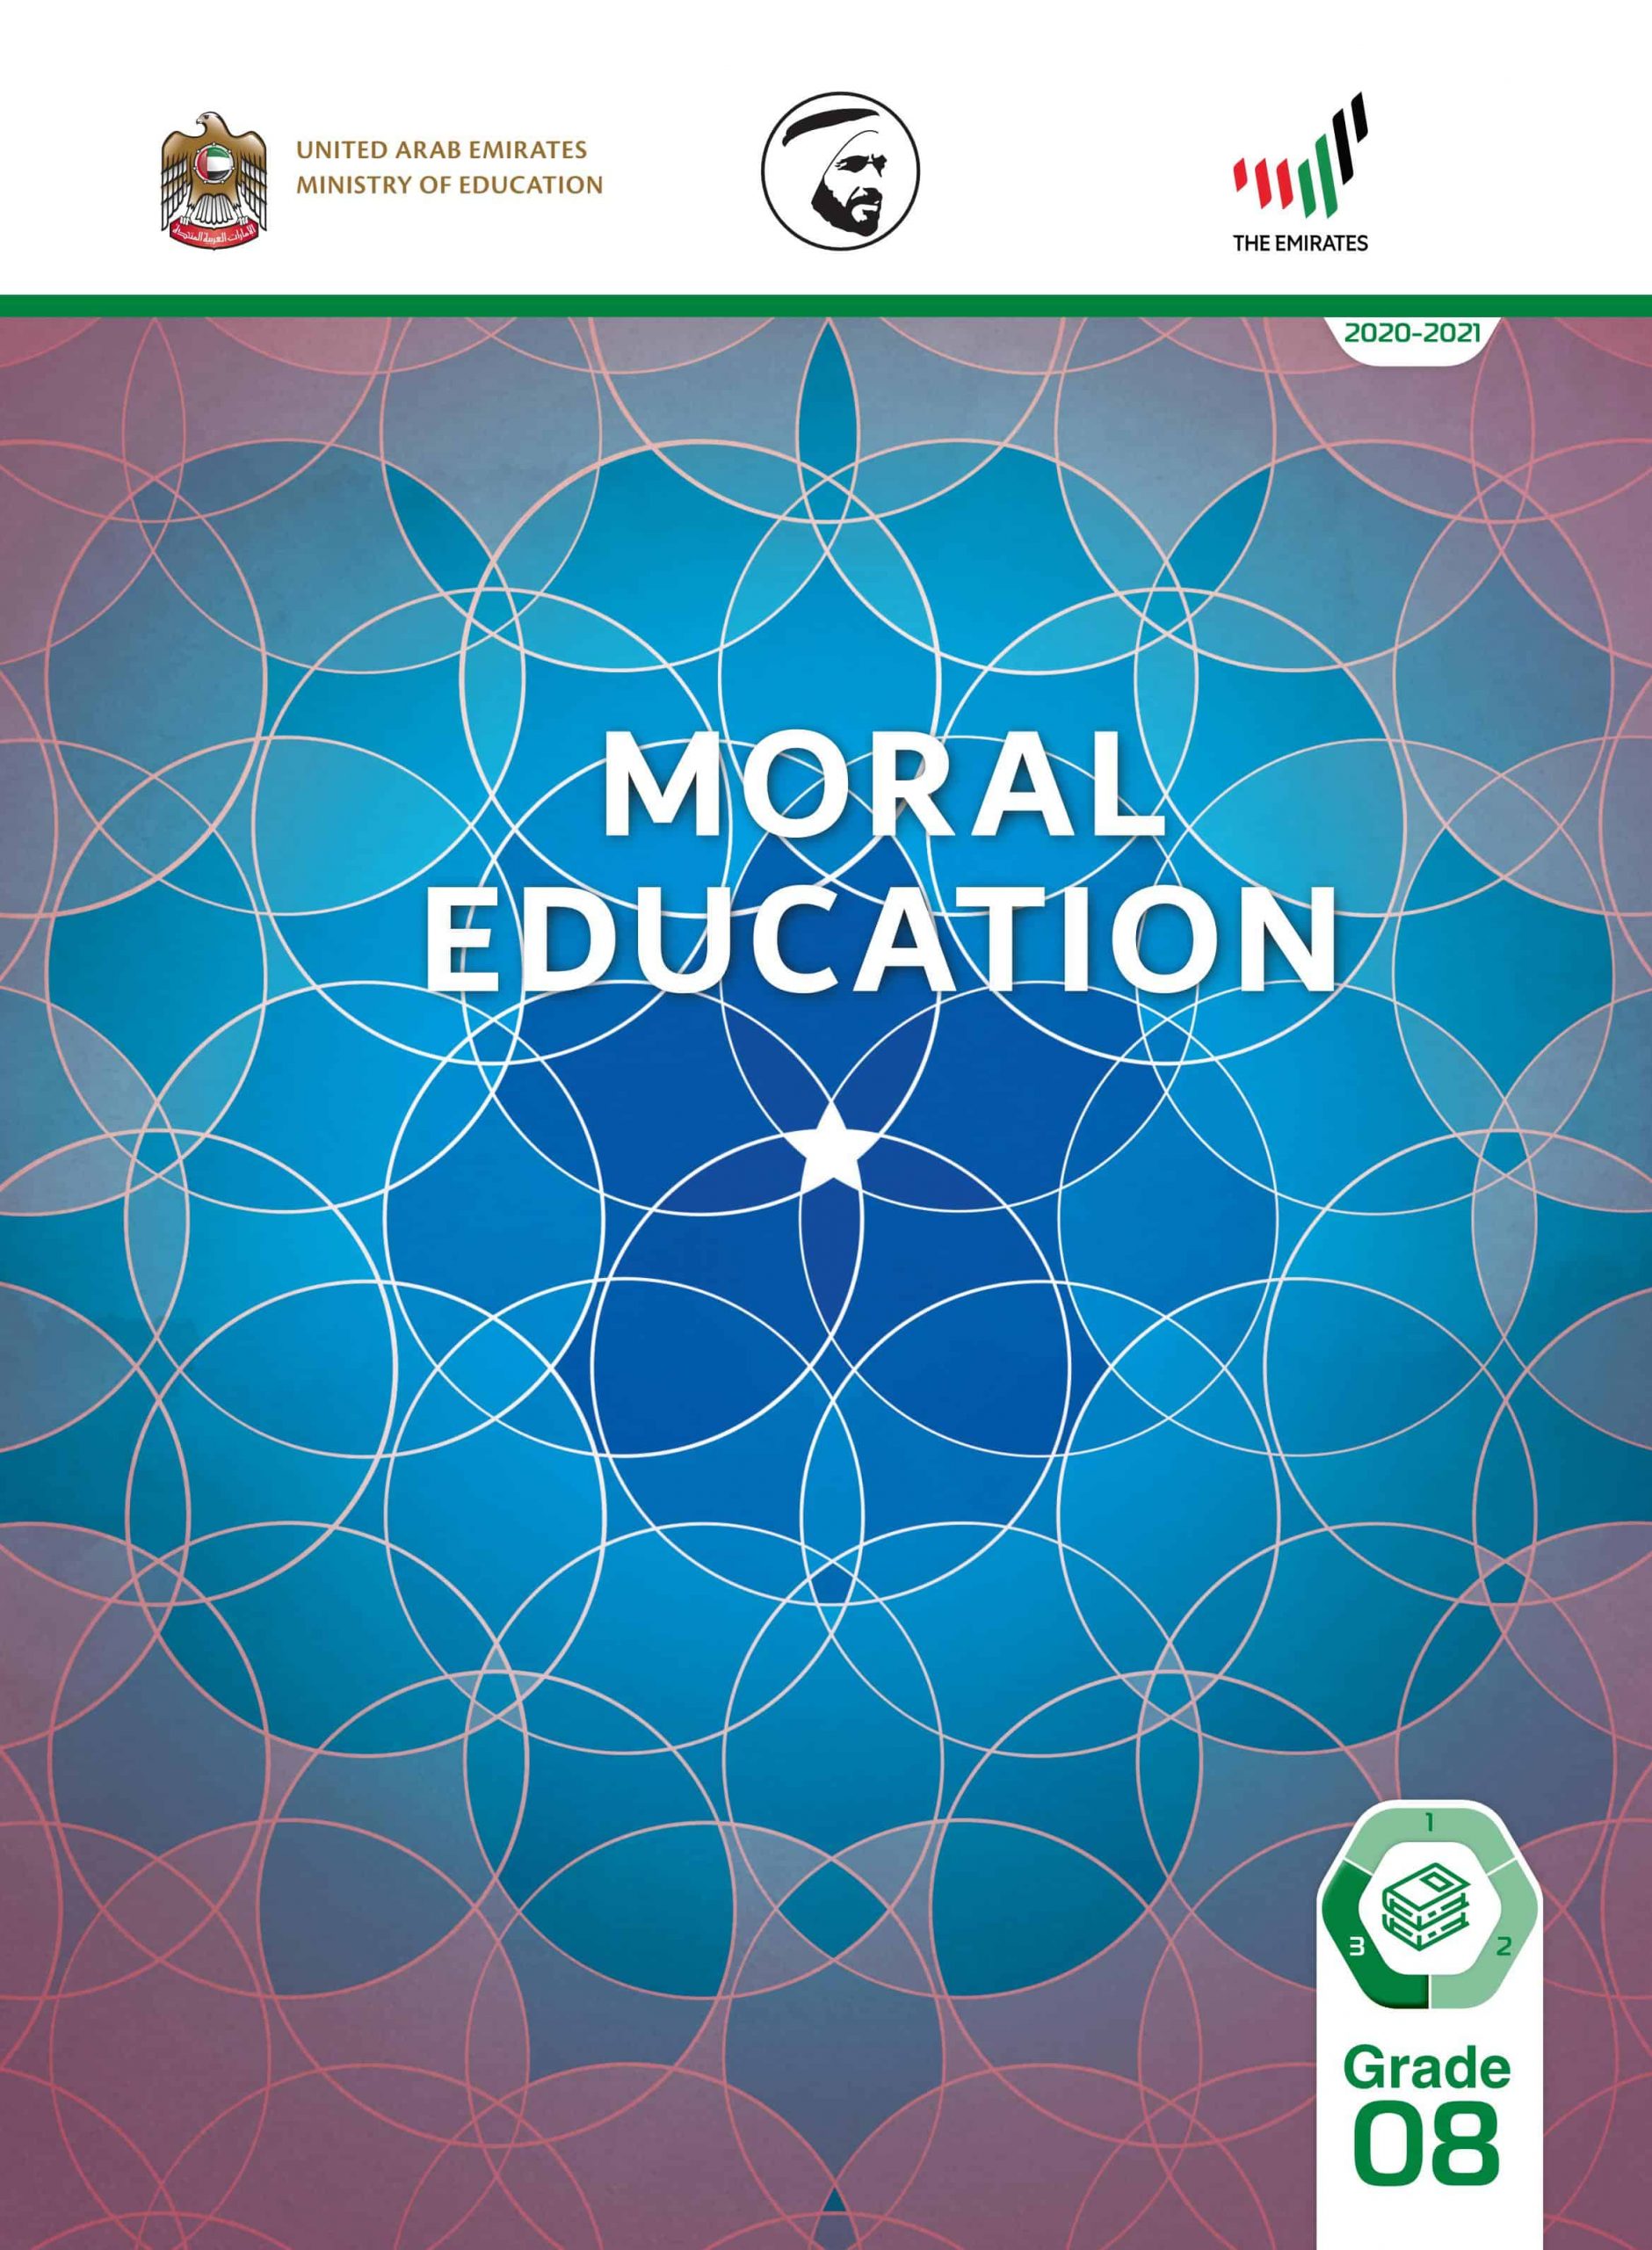 دليل المعلم بالإنجليزي الفصل الدراسي الثالث 2020-2021 الصف الثامن مادة التربية الأخلاقية